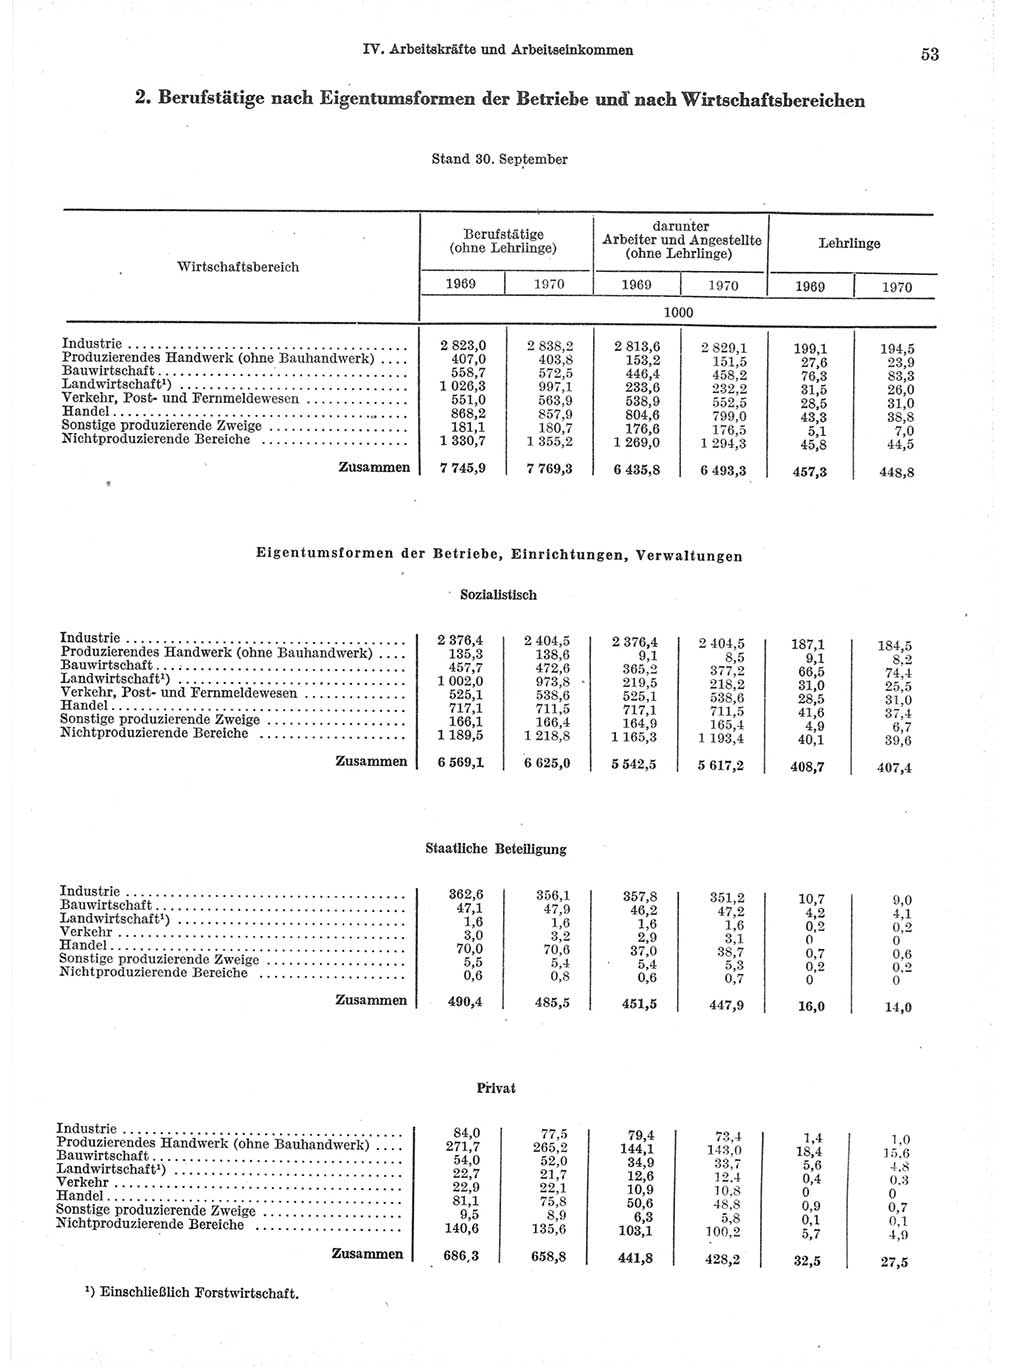 Statistisches Jahrbuch der Deutschen Demokratischen Republik (DDR) 1971, Seite 53 (Stat. Jb. DDR 1971, S. 53)